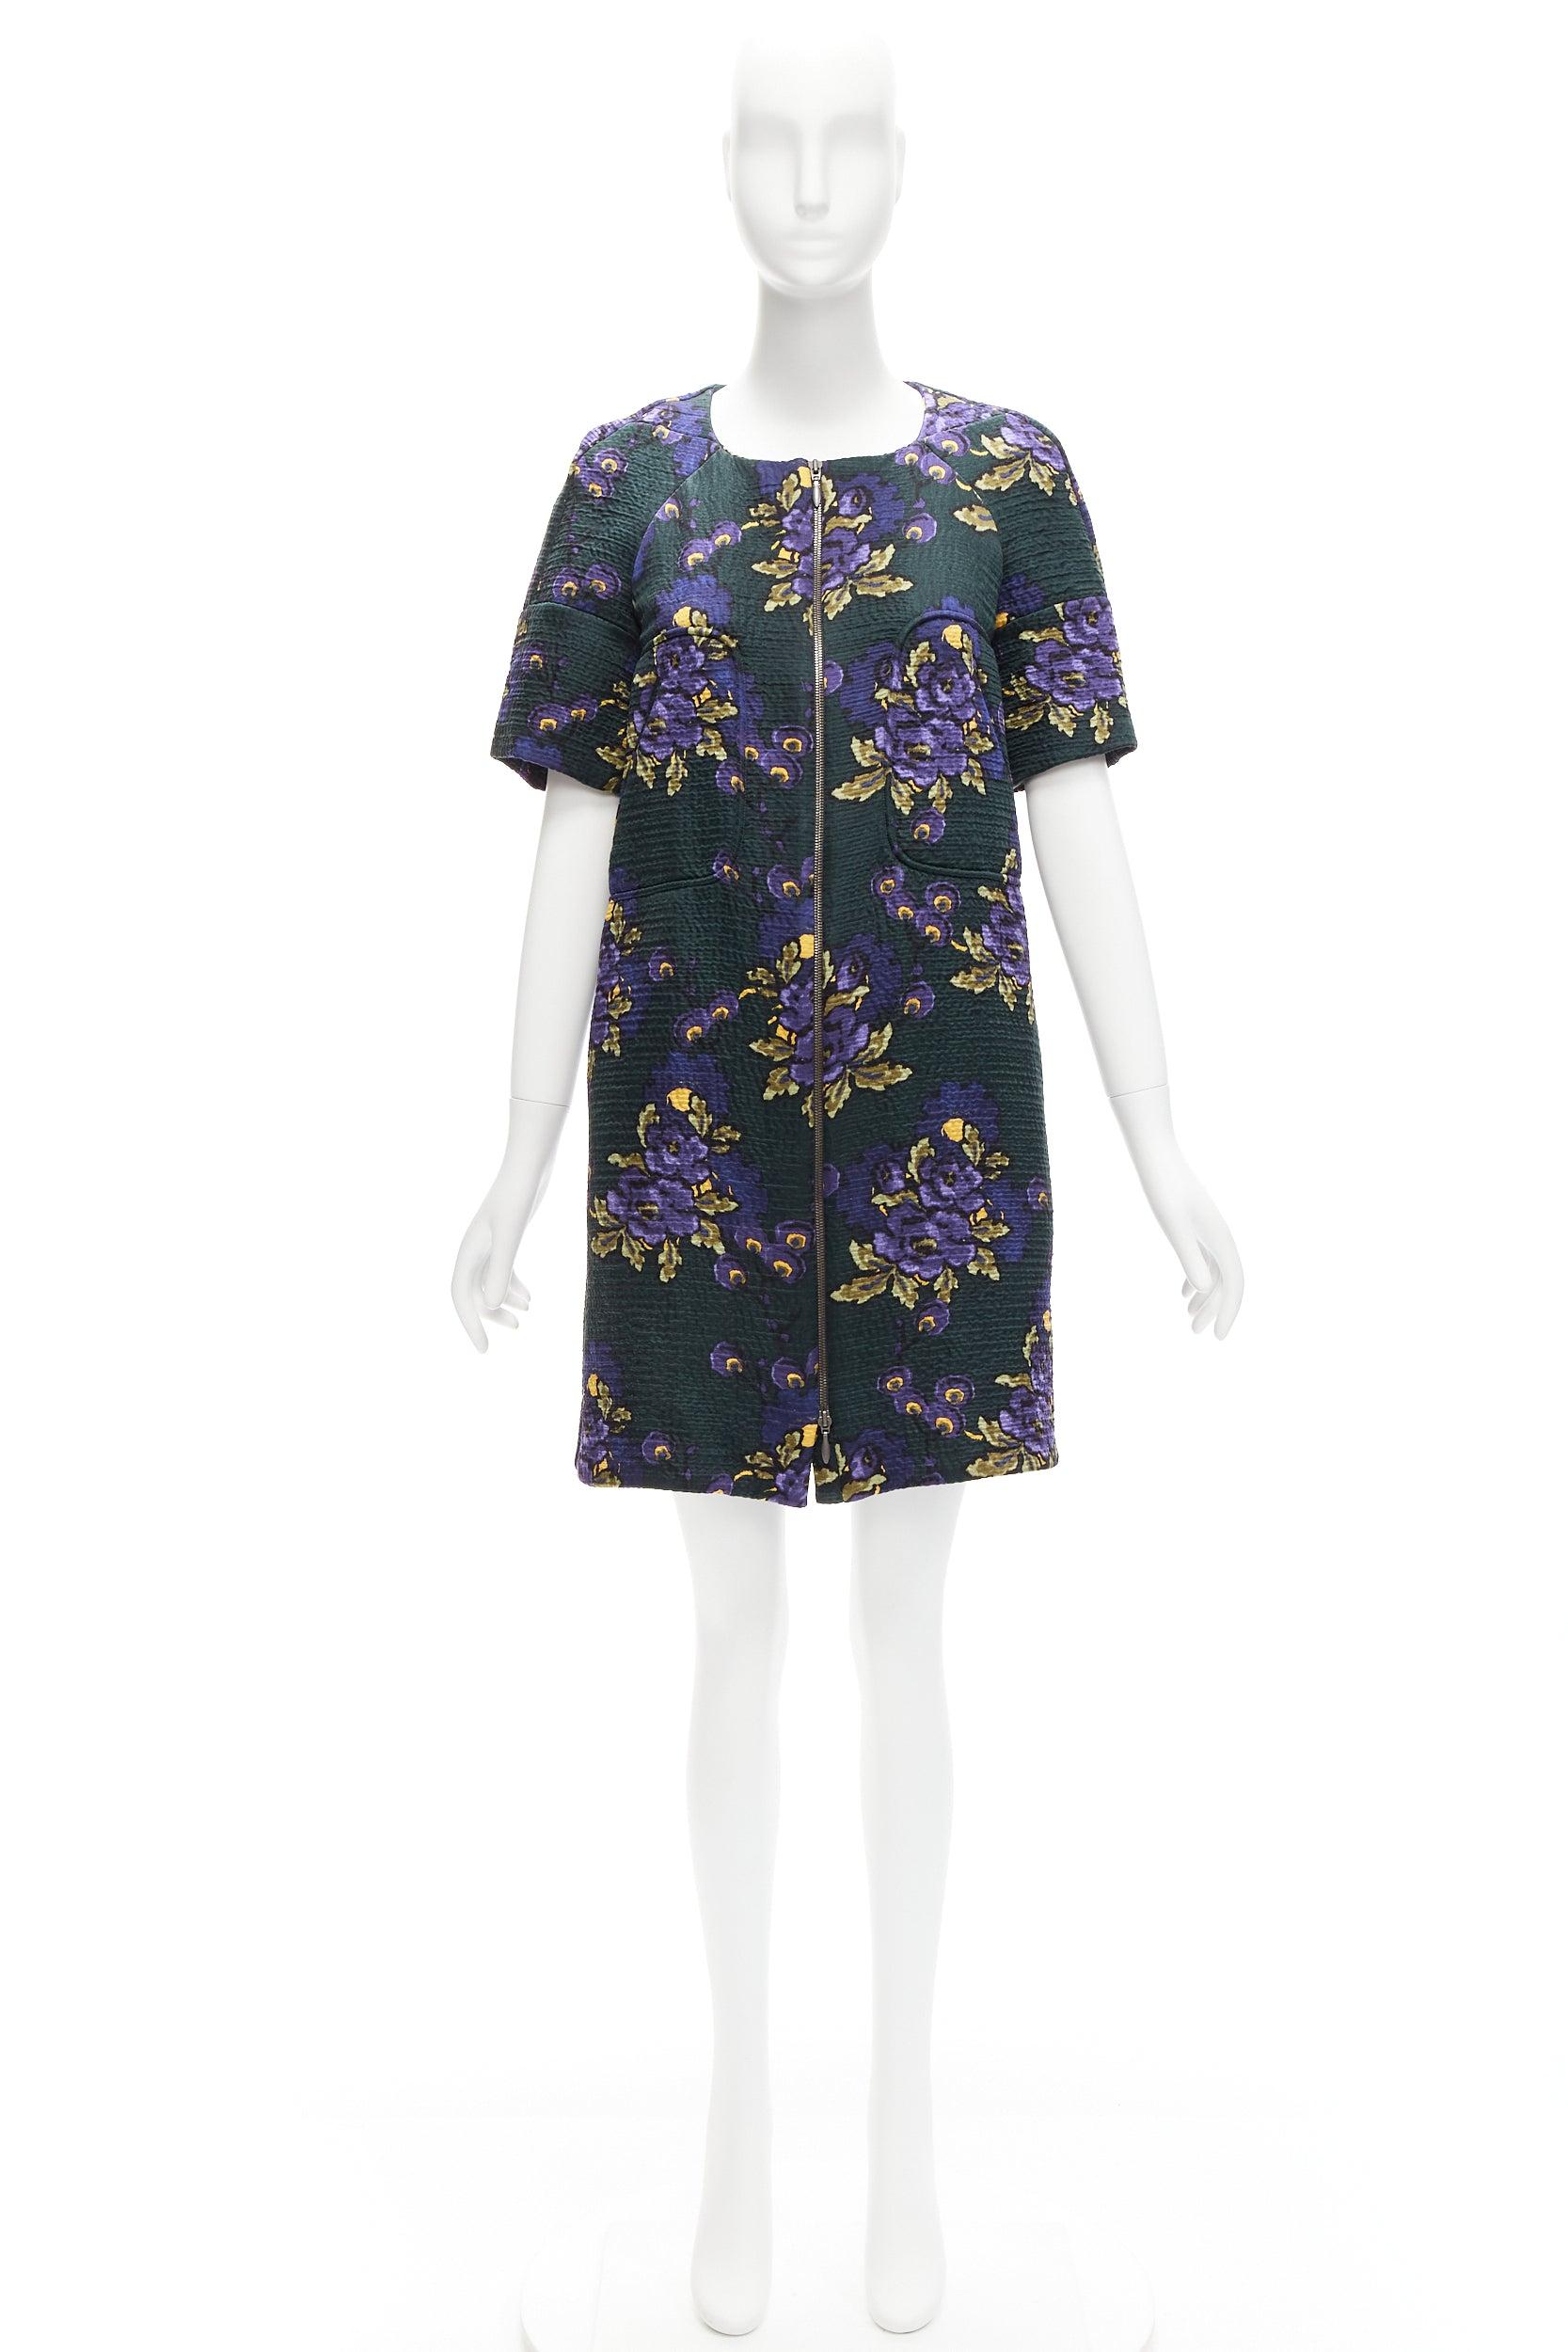 MARNI green purple wool silk cloque floral print zip coat dress IT38 XS For Sale 3